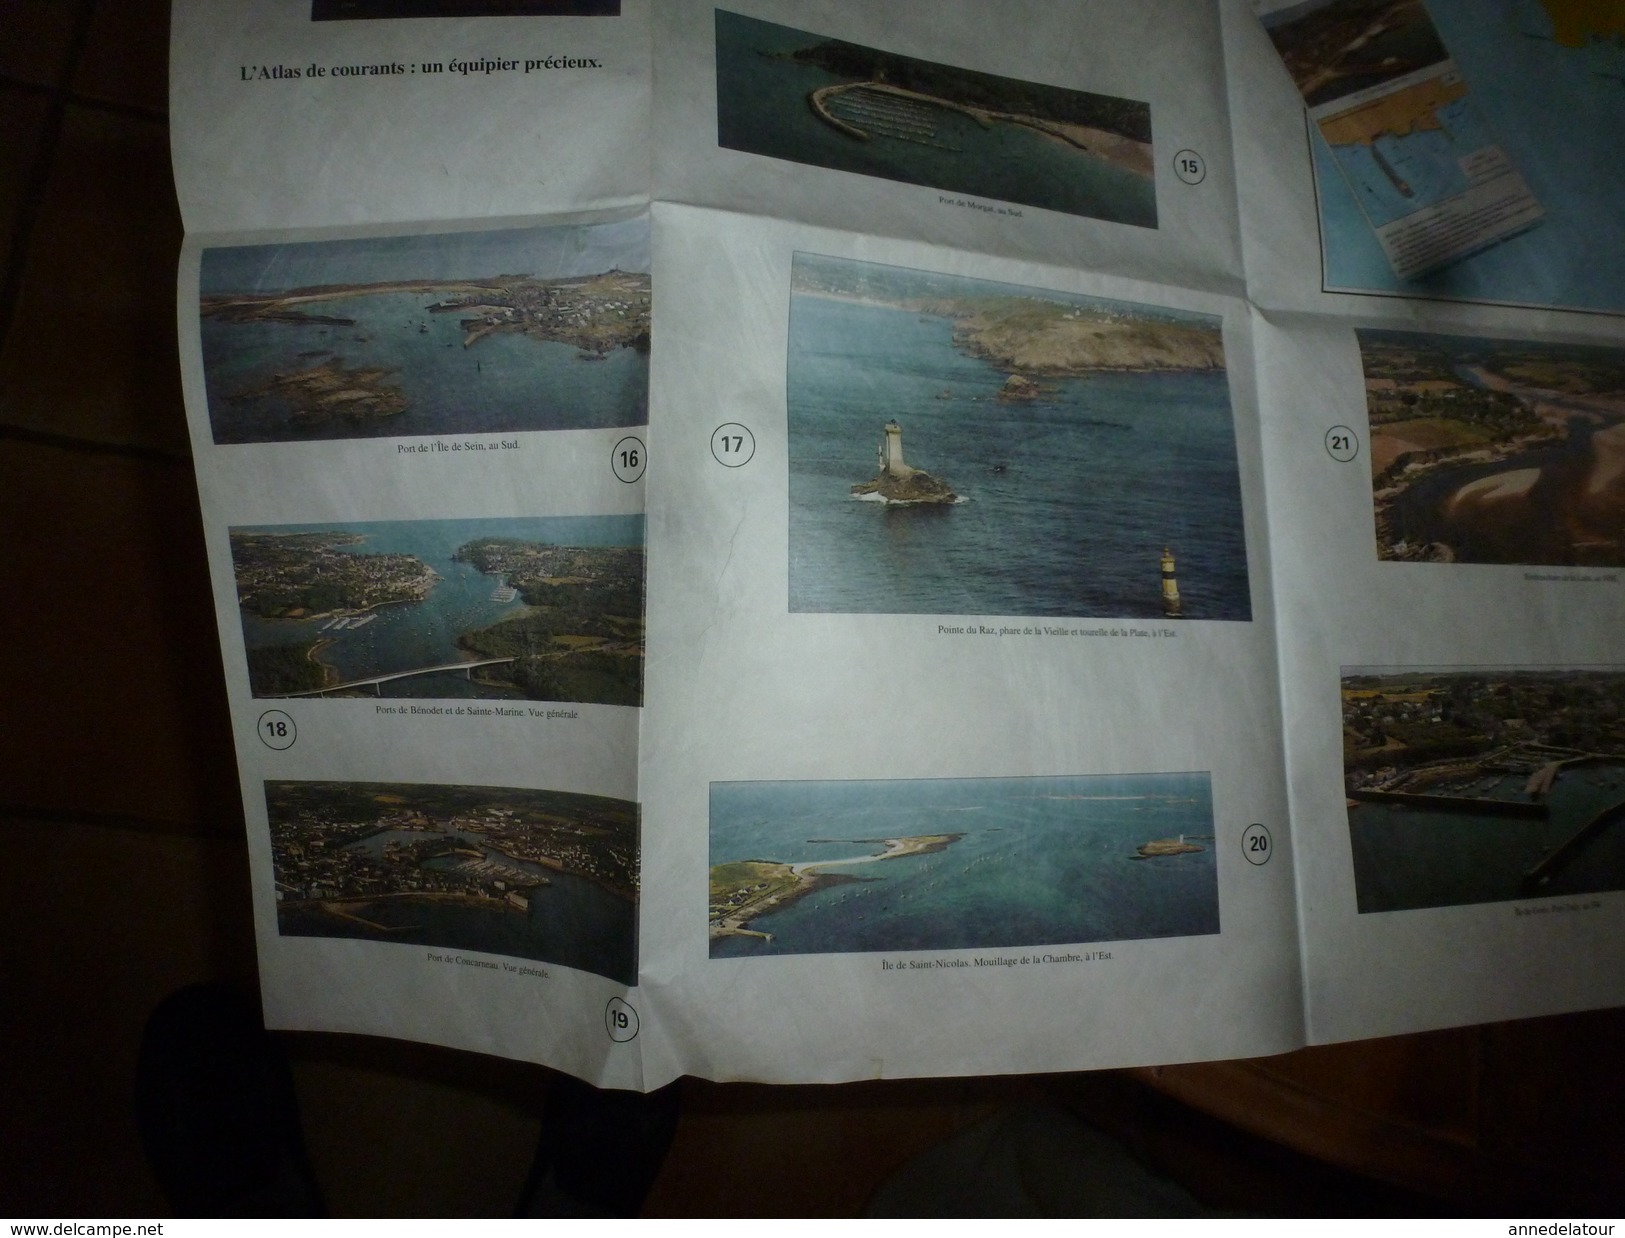 1997 De QUIBERON au CROISIC :  CARTE SPECIALE "P" avec Plan et illustrations  avec instructions nautiques, marées, etc